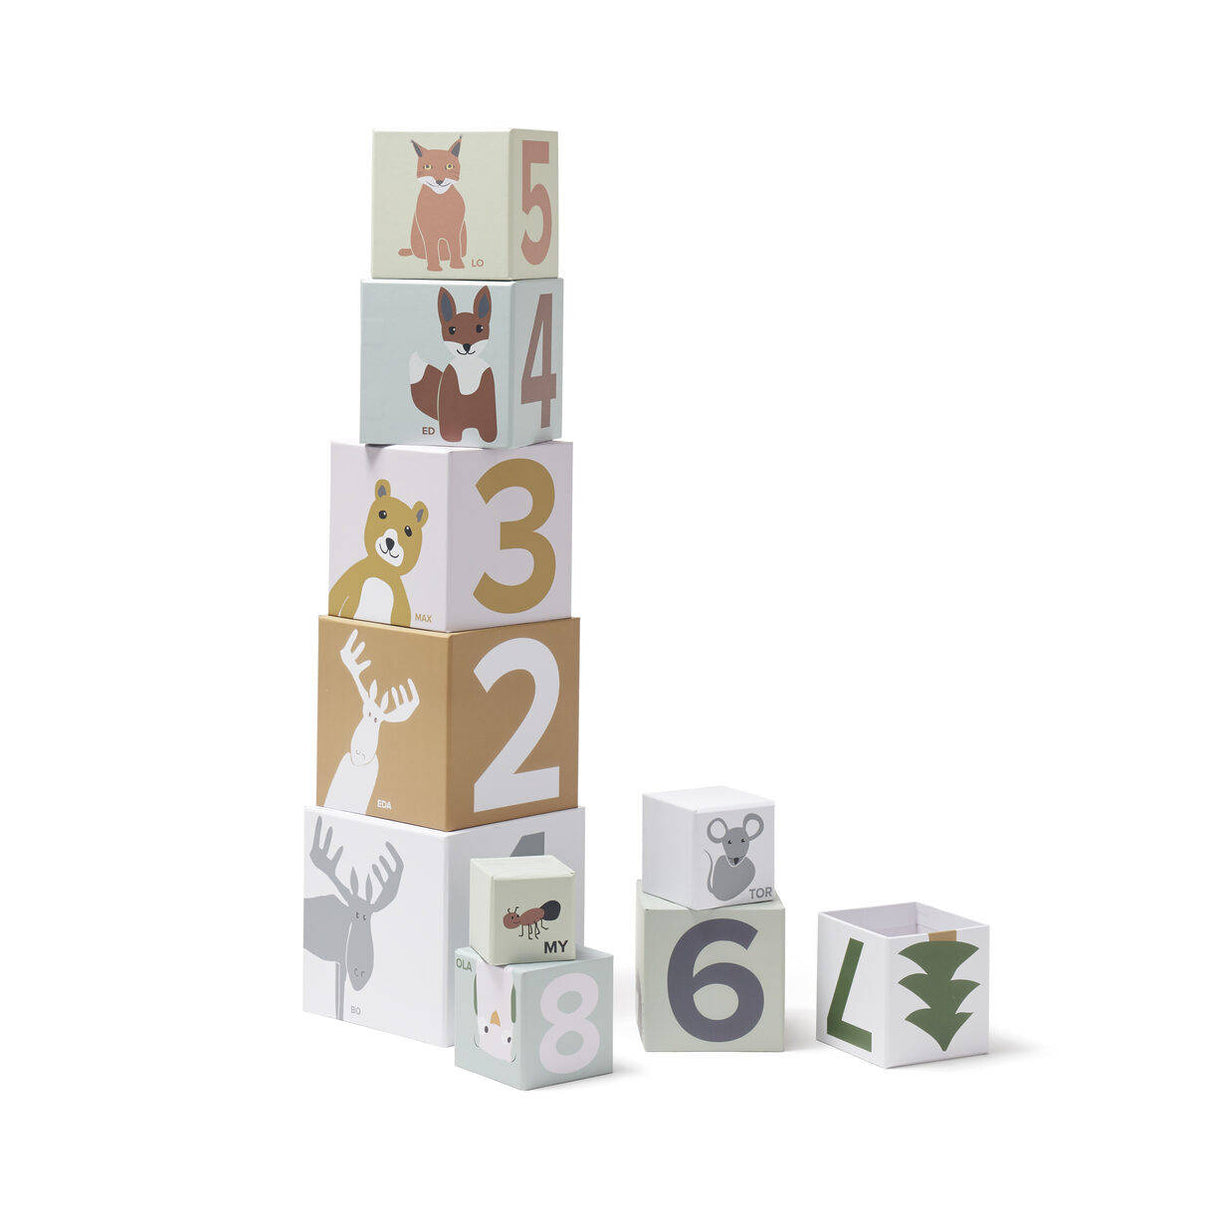 Kid's Concept EDVIN kostki papierowe 1-10, edukacyjna zabawka z liczbami i leśnymi zwierzątkami, rozwija motorykę i ciekawość.